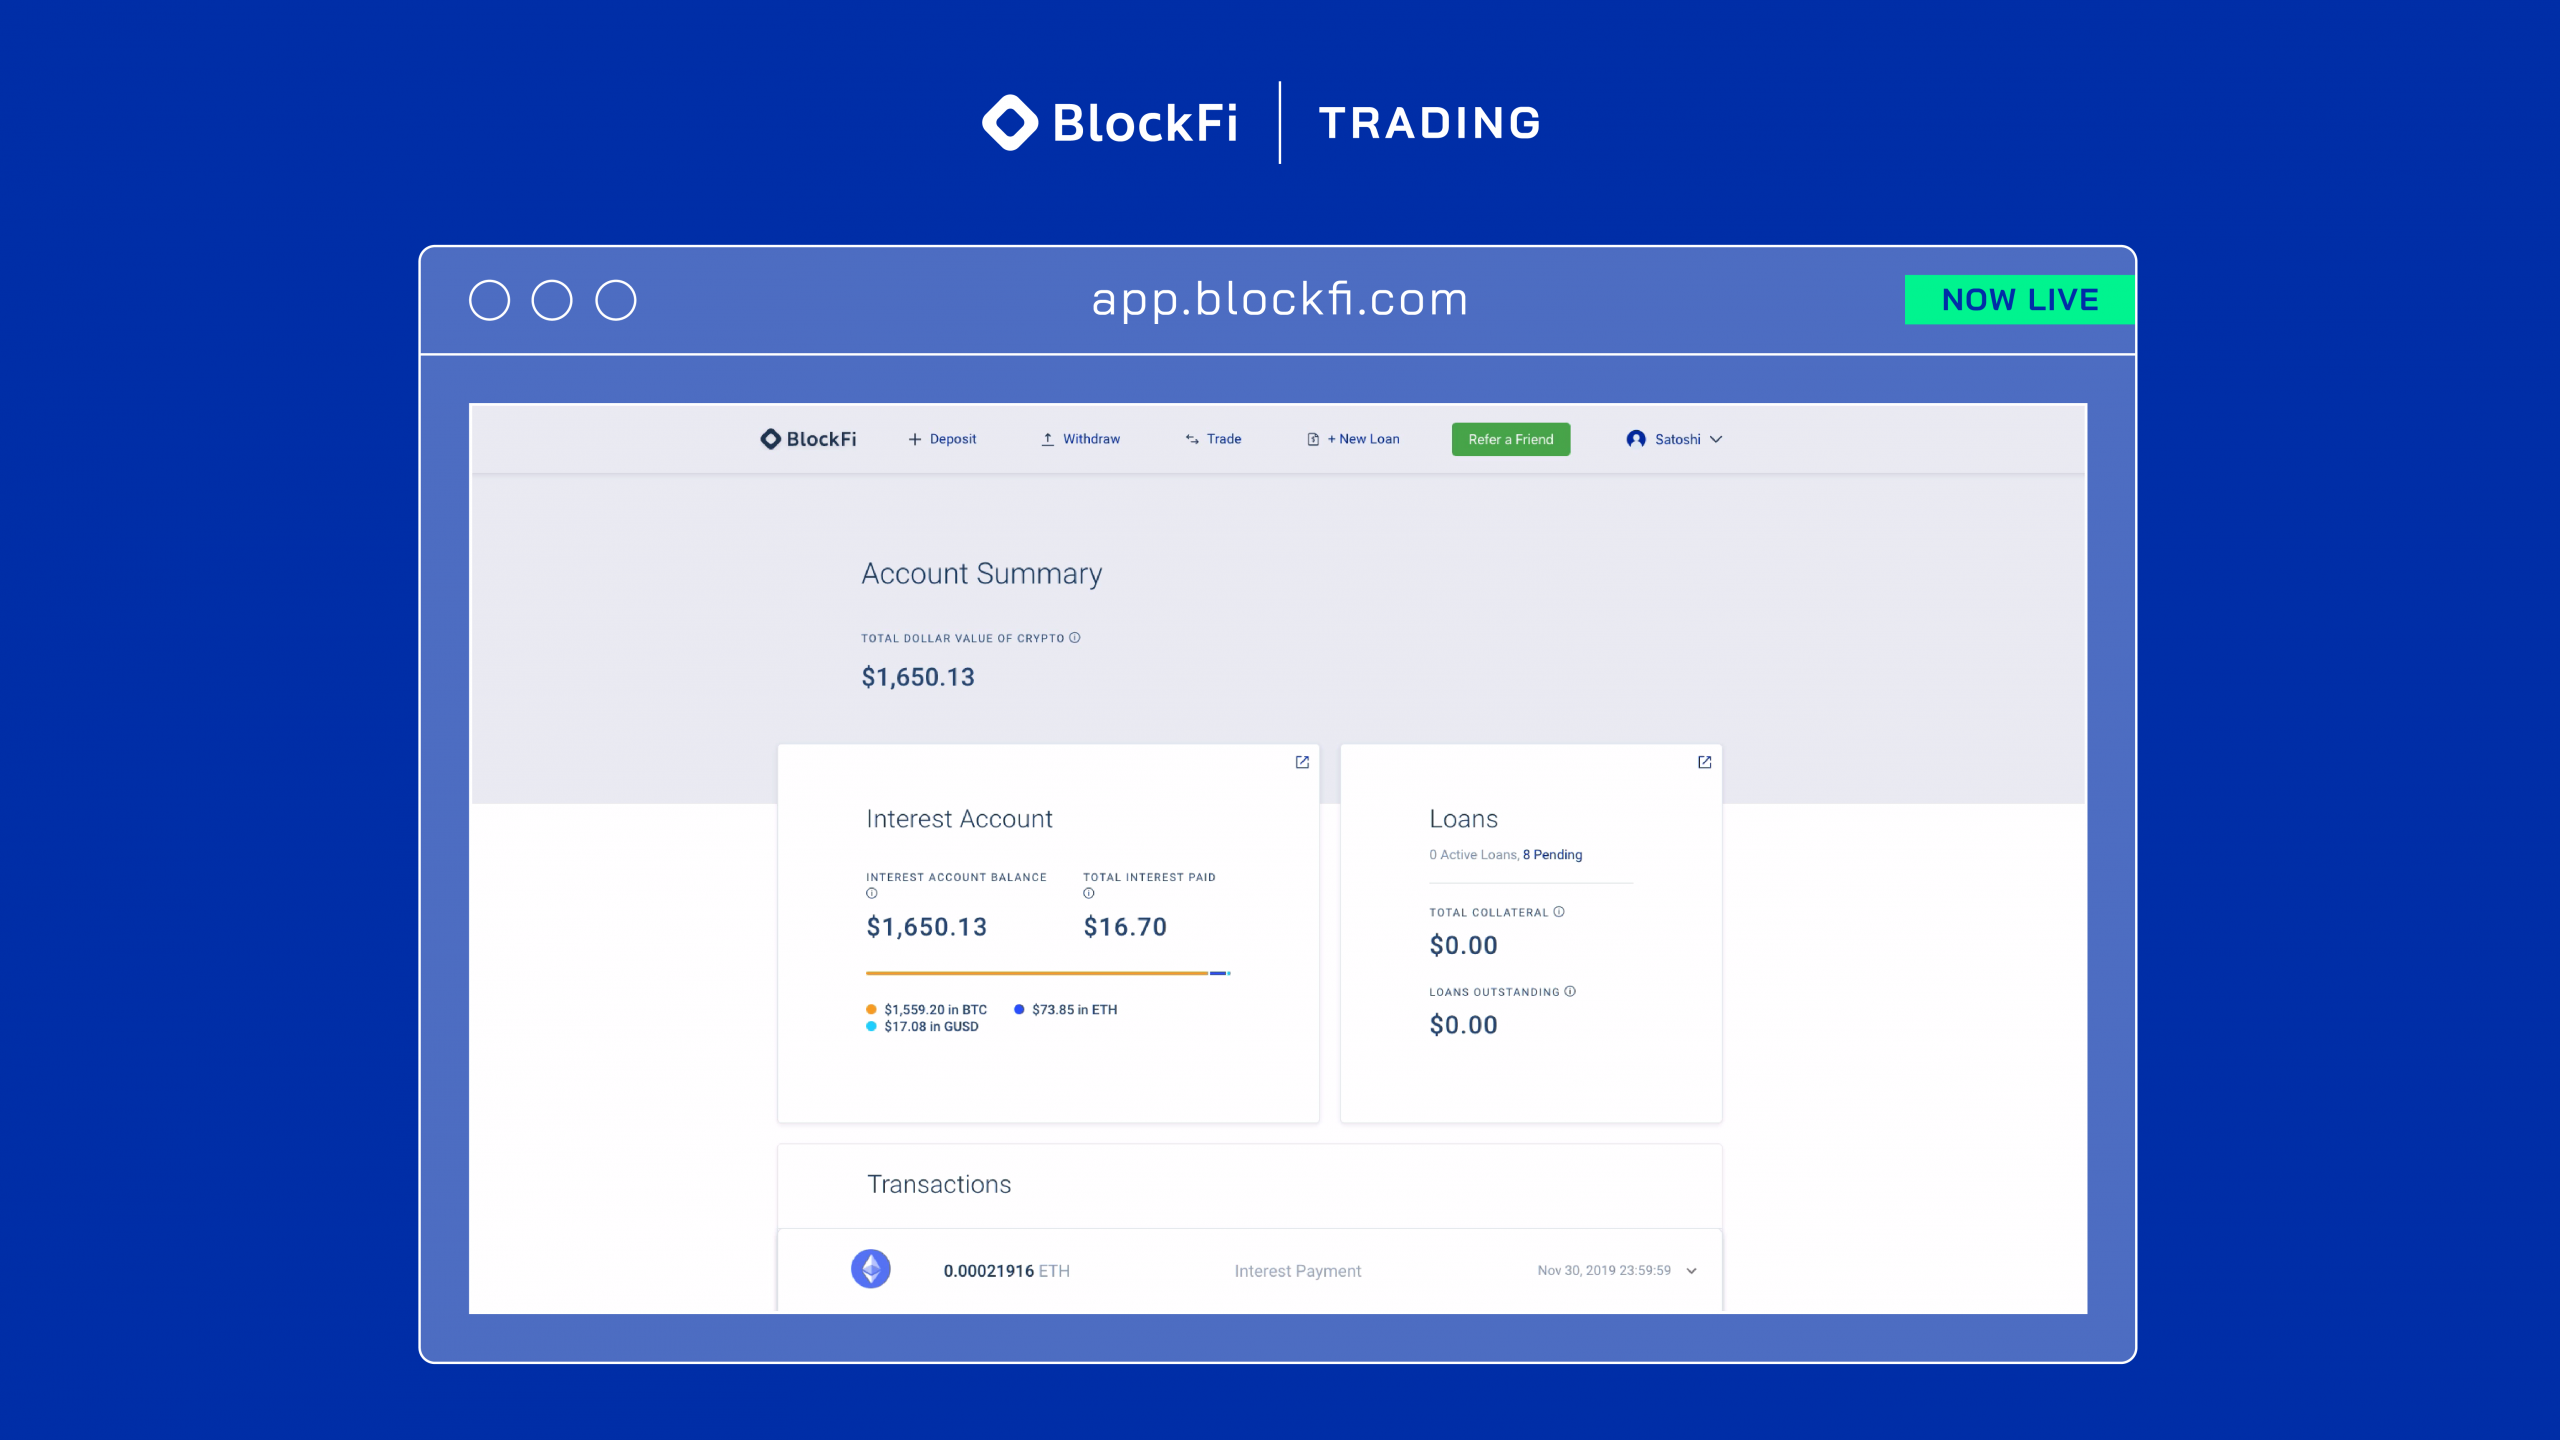 BlockFi Trading